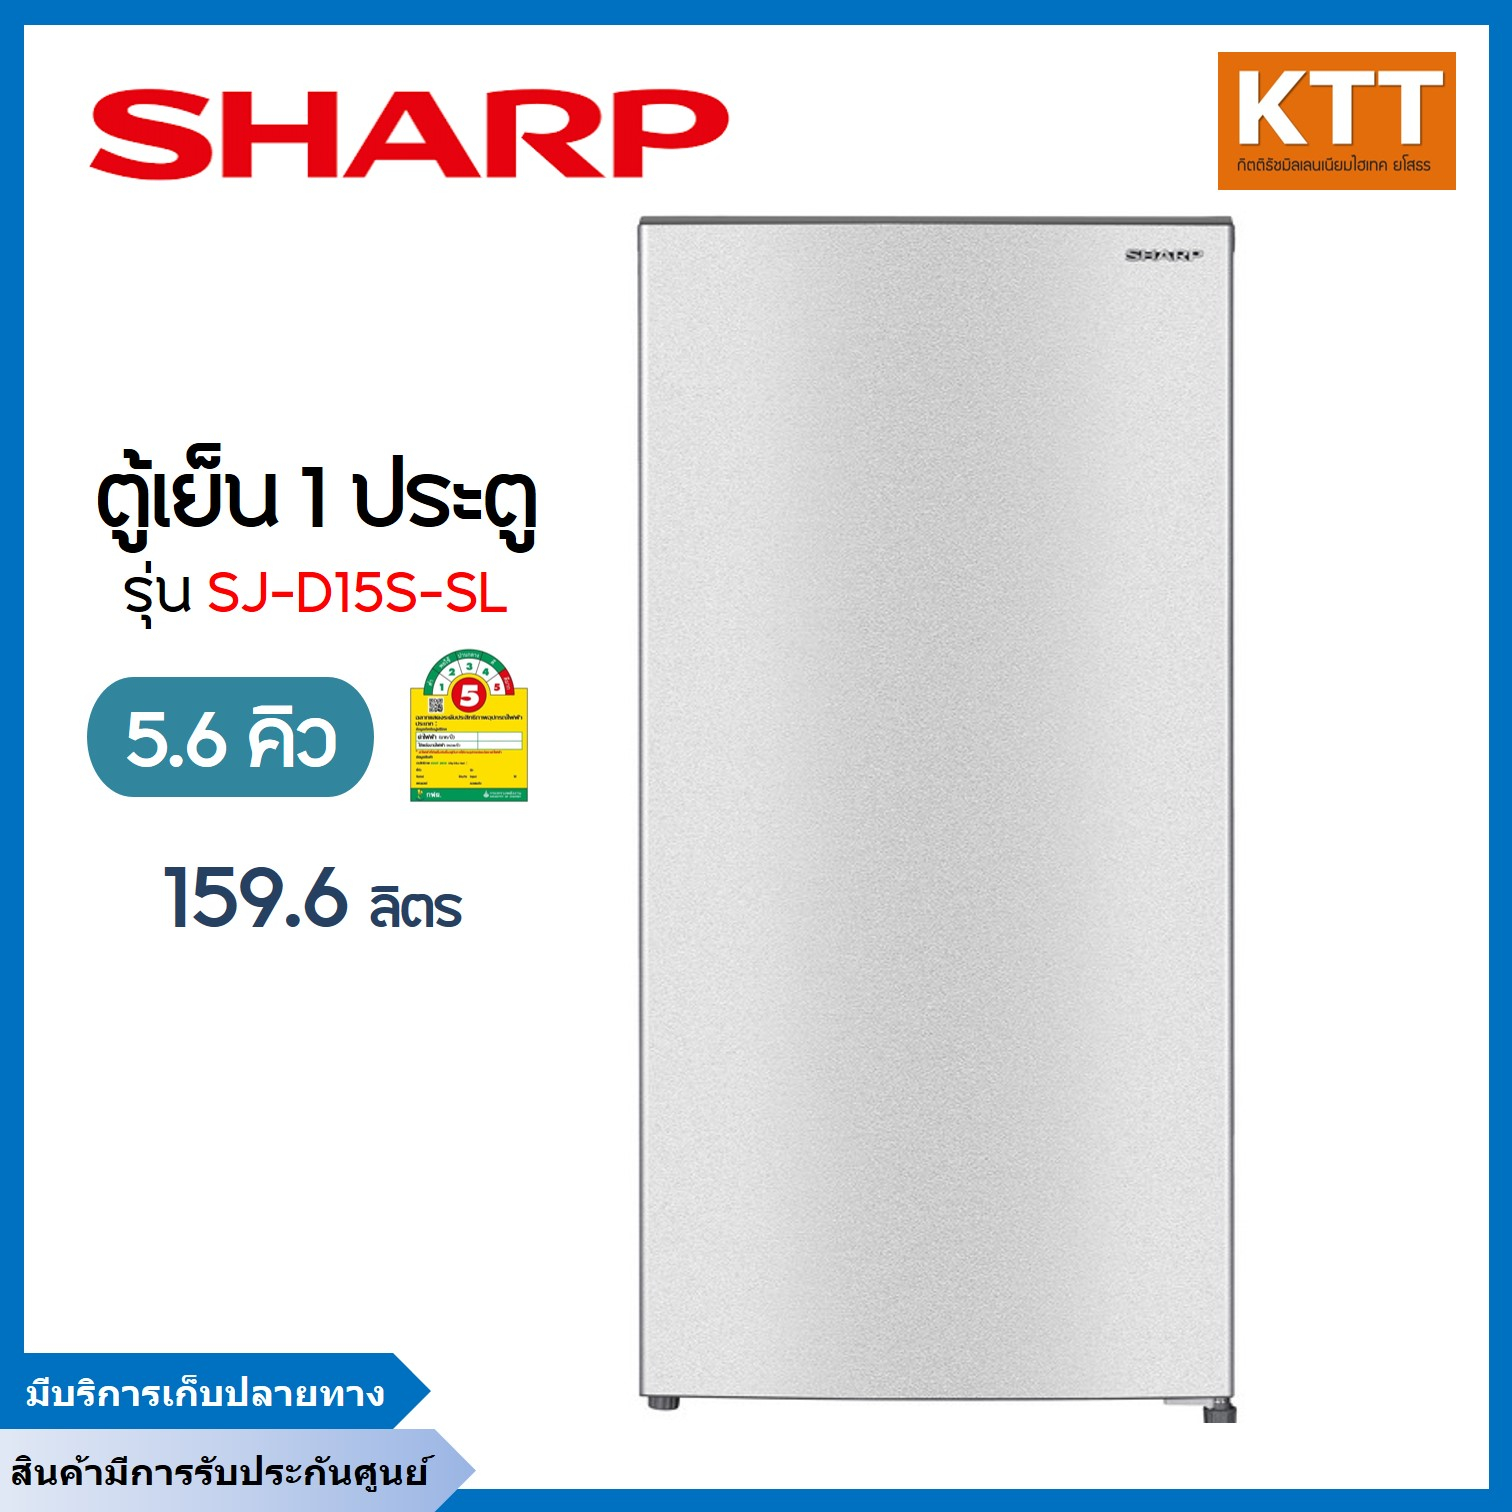 SHARP ตู้เย็น 1 ประตู 5.6 คิว, สีเงิน รุ่น SJ-D15S-SL พร้อมส่ง